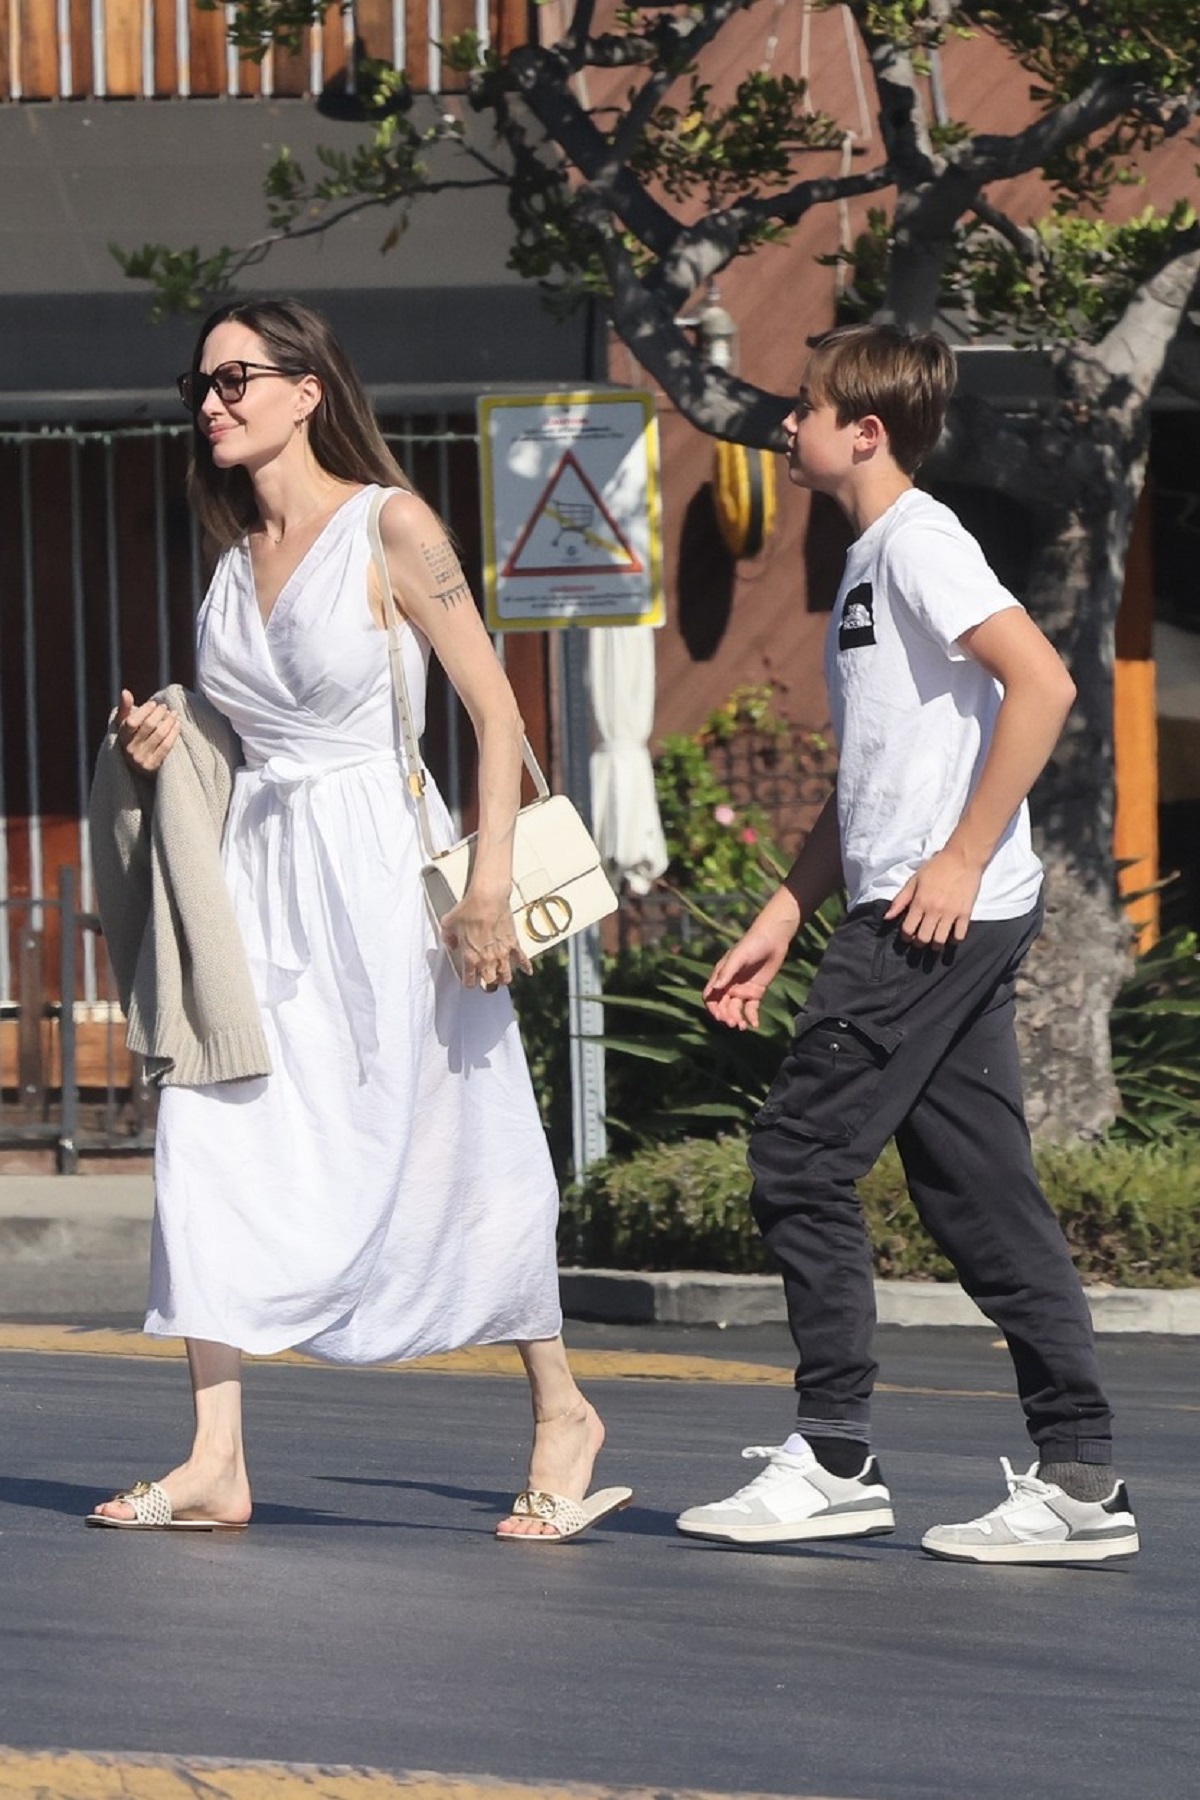 Angelina Jolie și Knox în timp ce părăsesc un magazin din California